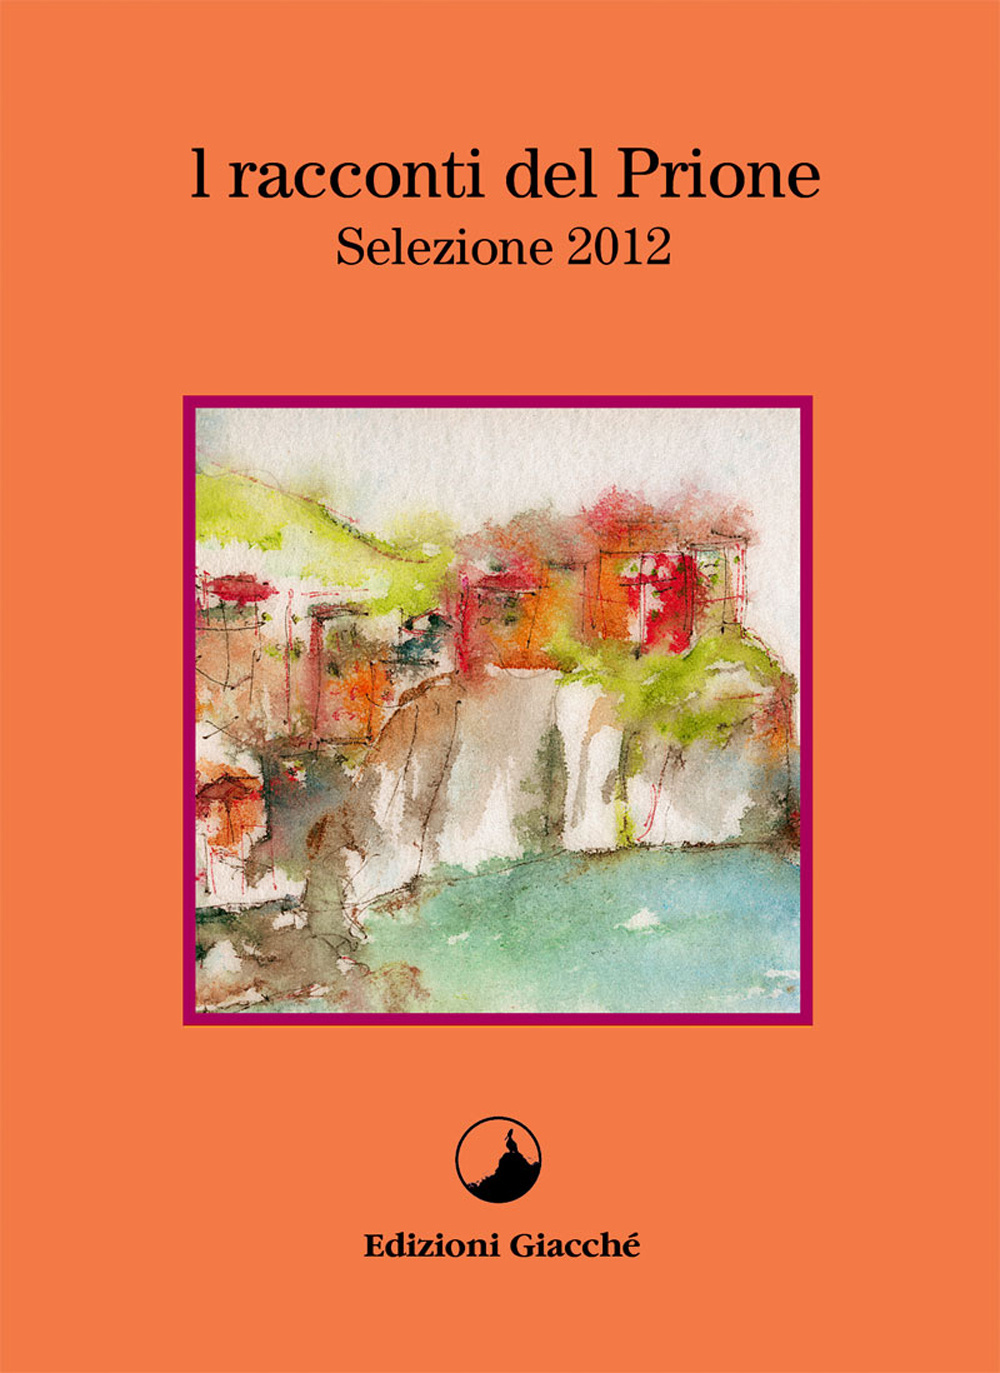 I racconti del Prione. Selezione 2012